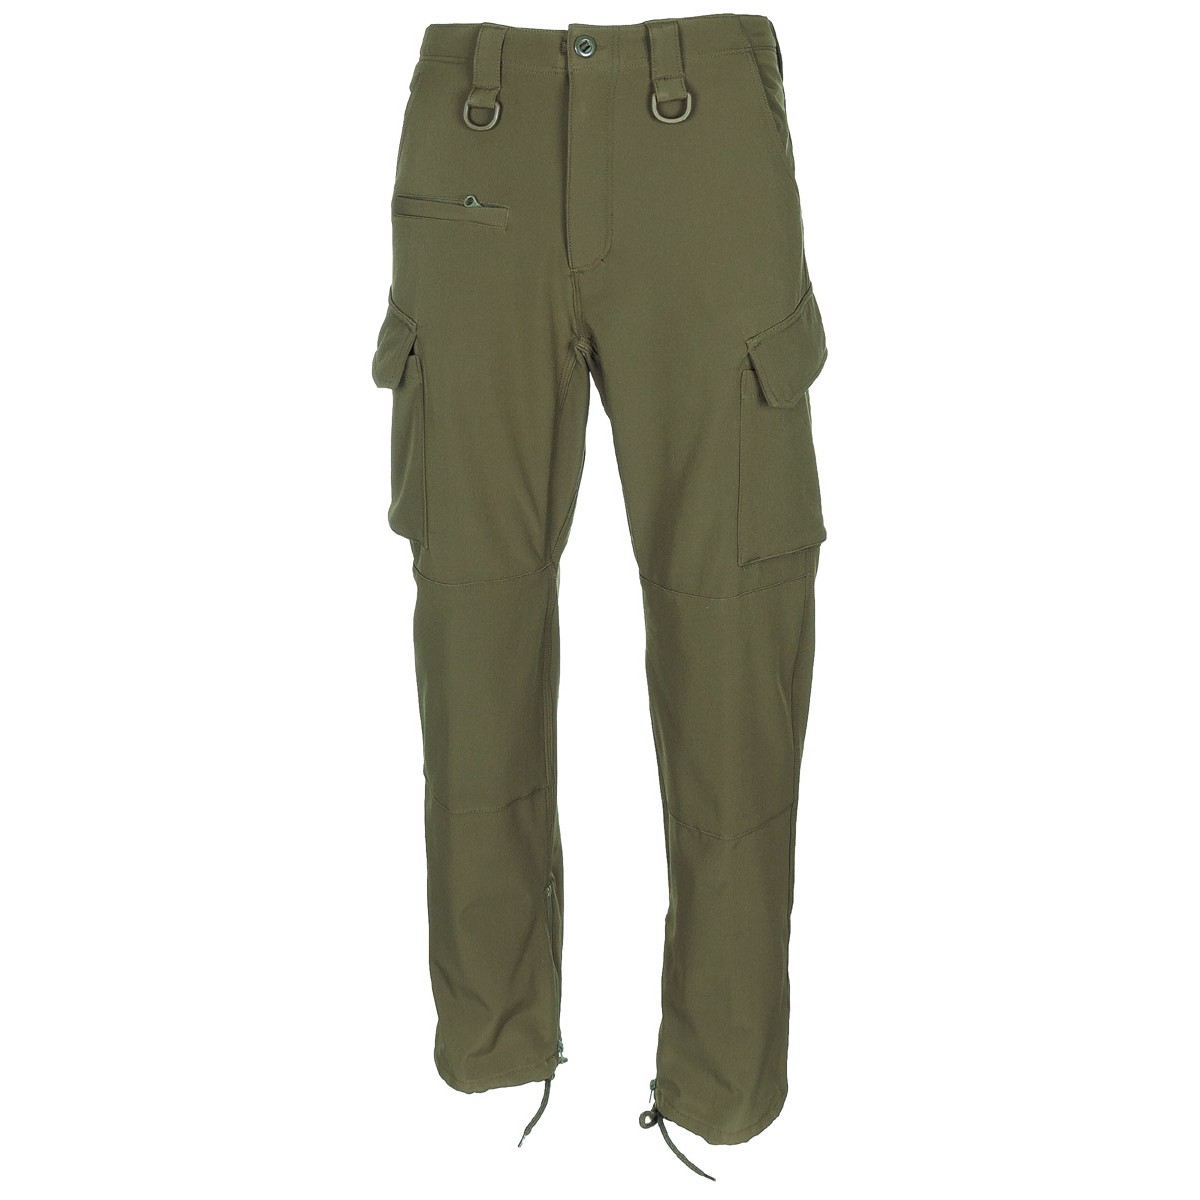 Kalhoty MFH Softshell Allround - olivové, XL